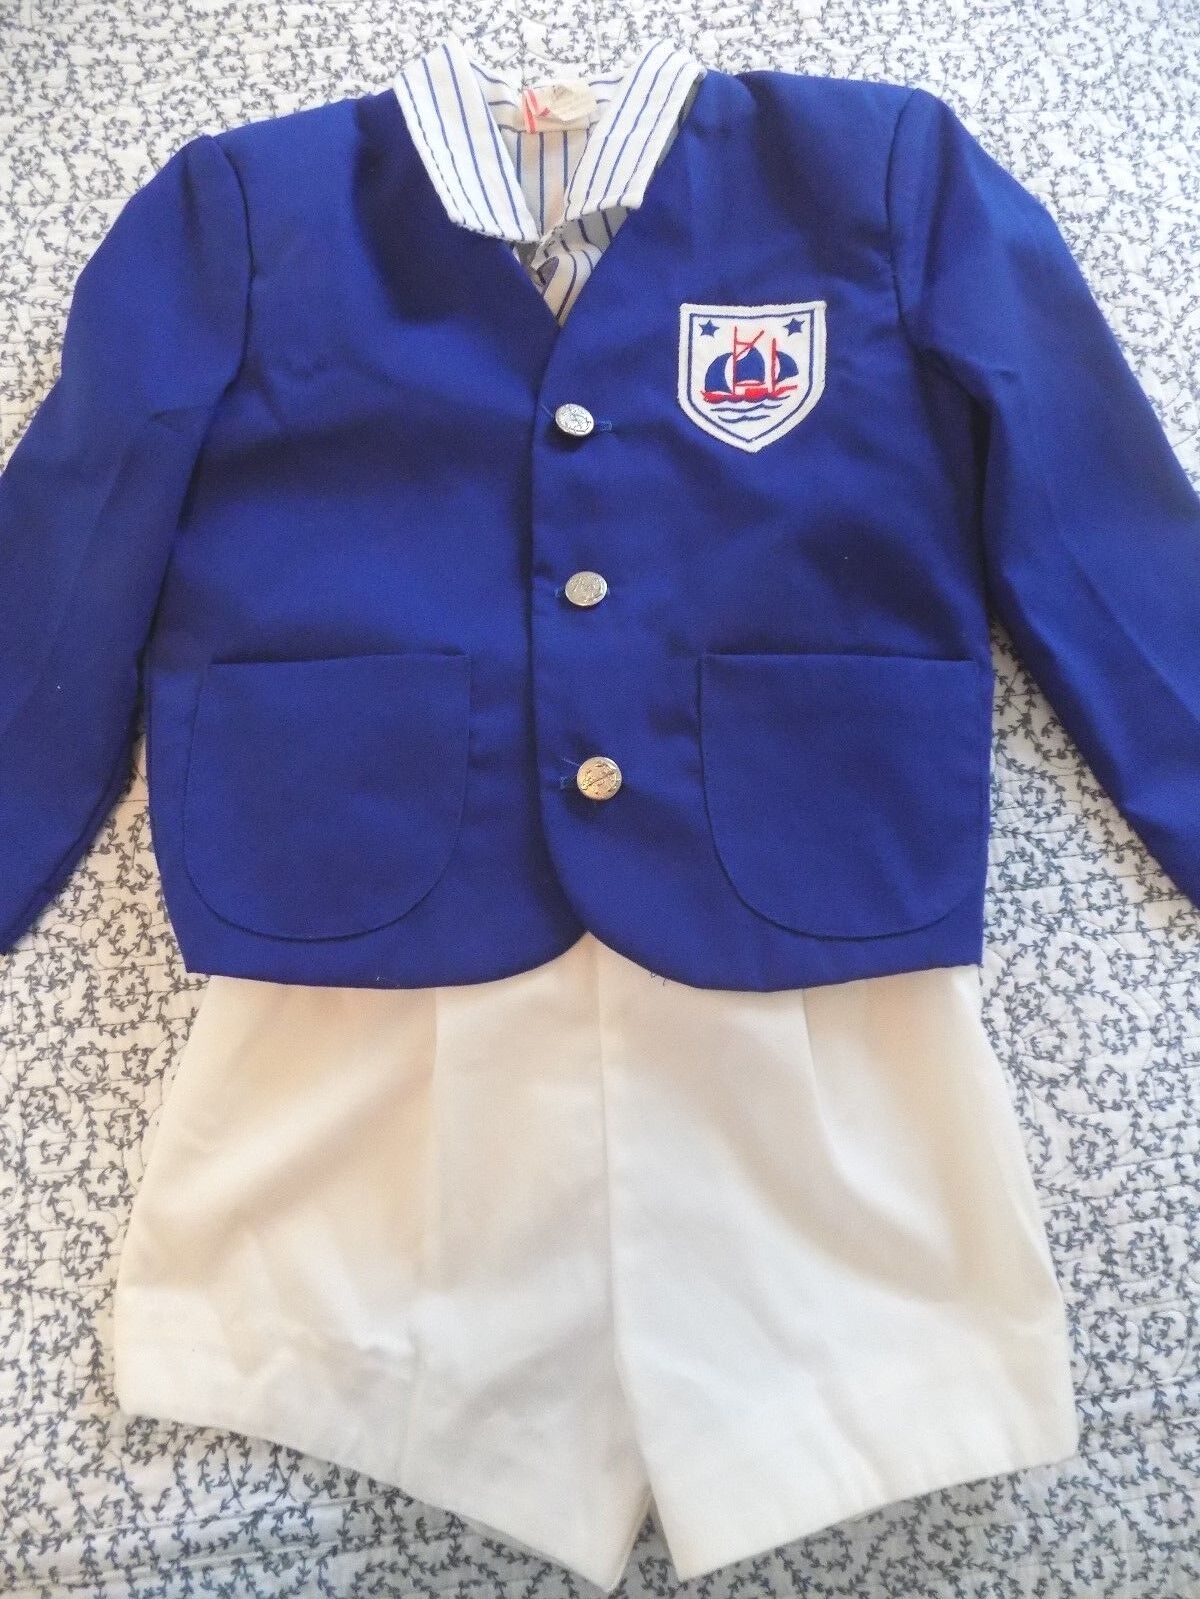 Jacket, Shirt & Shorts ~ Blue & White ~ Vintage ~ Size 4